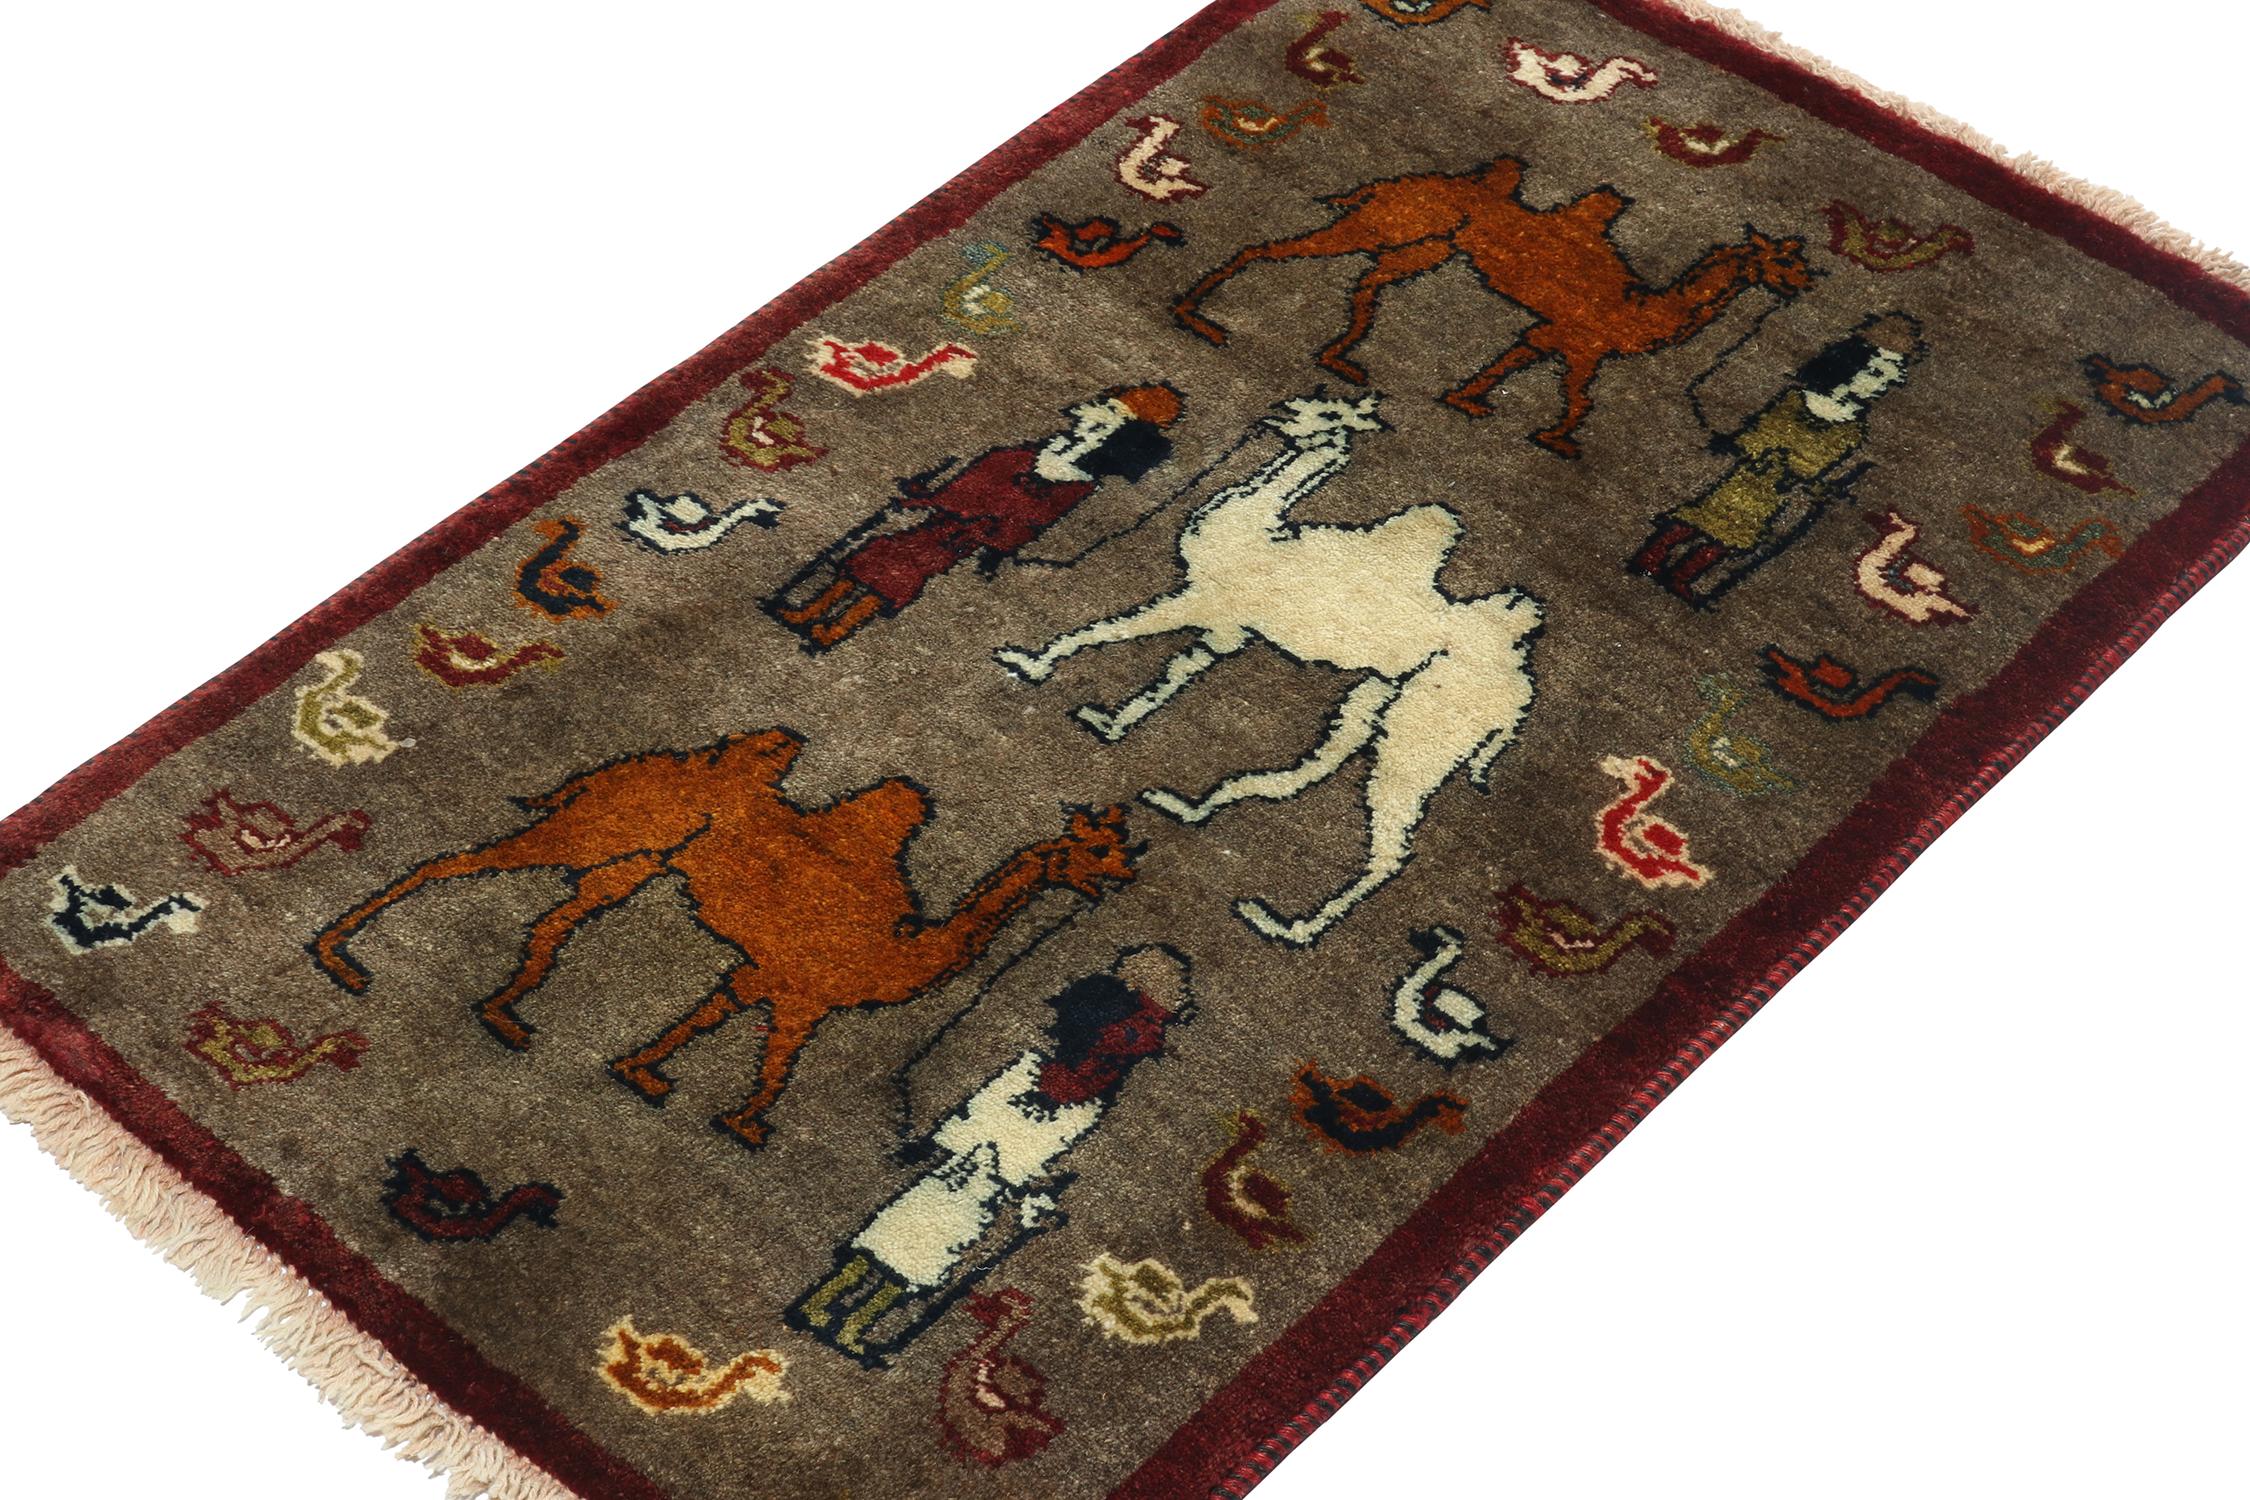 Ce tapis persan 2x4 Gabbeh vintage fait partie des dernières entrées dans les curations tribales rares de Rug & Kilim. Noué à la main en laine, vers 1950-1960.

Plus loin dans la conception :

Cette origine tribale est l'un des styles